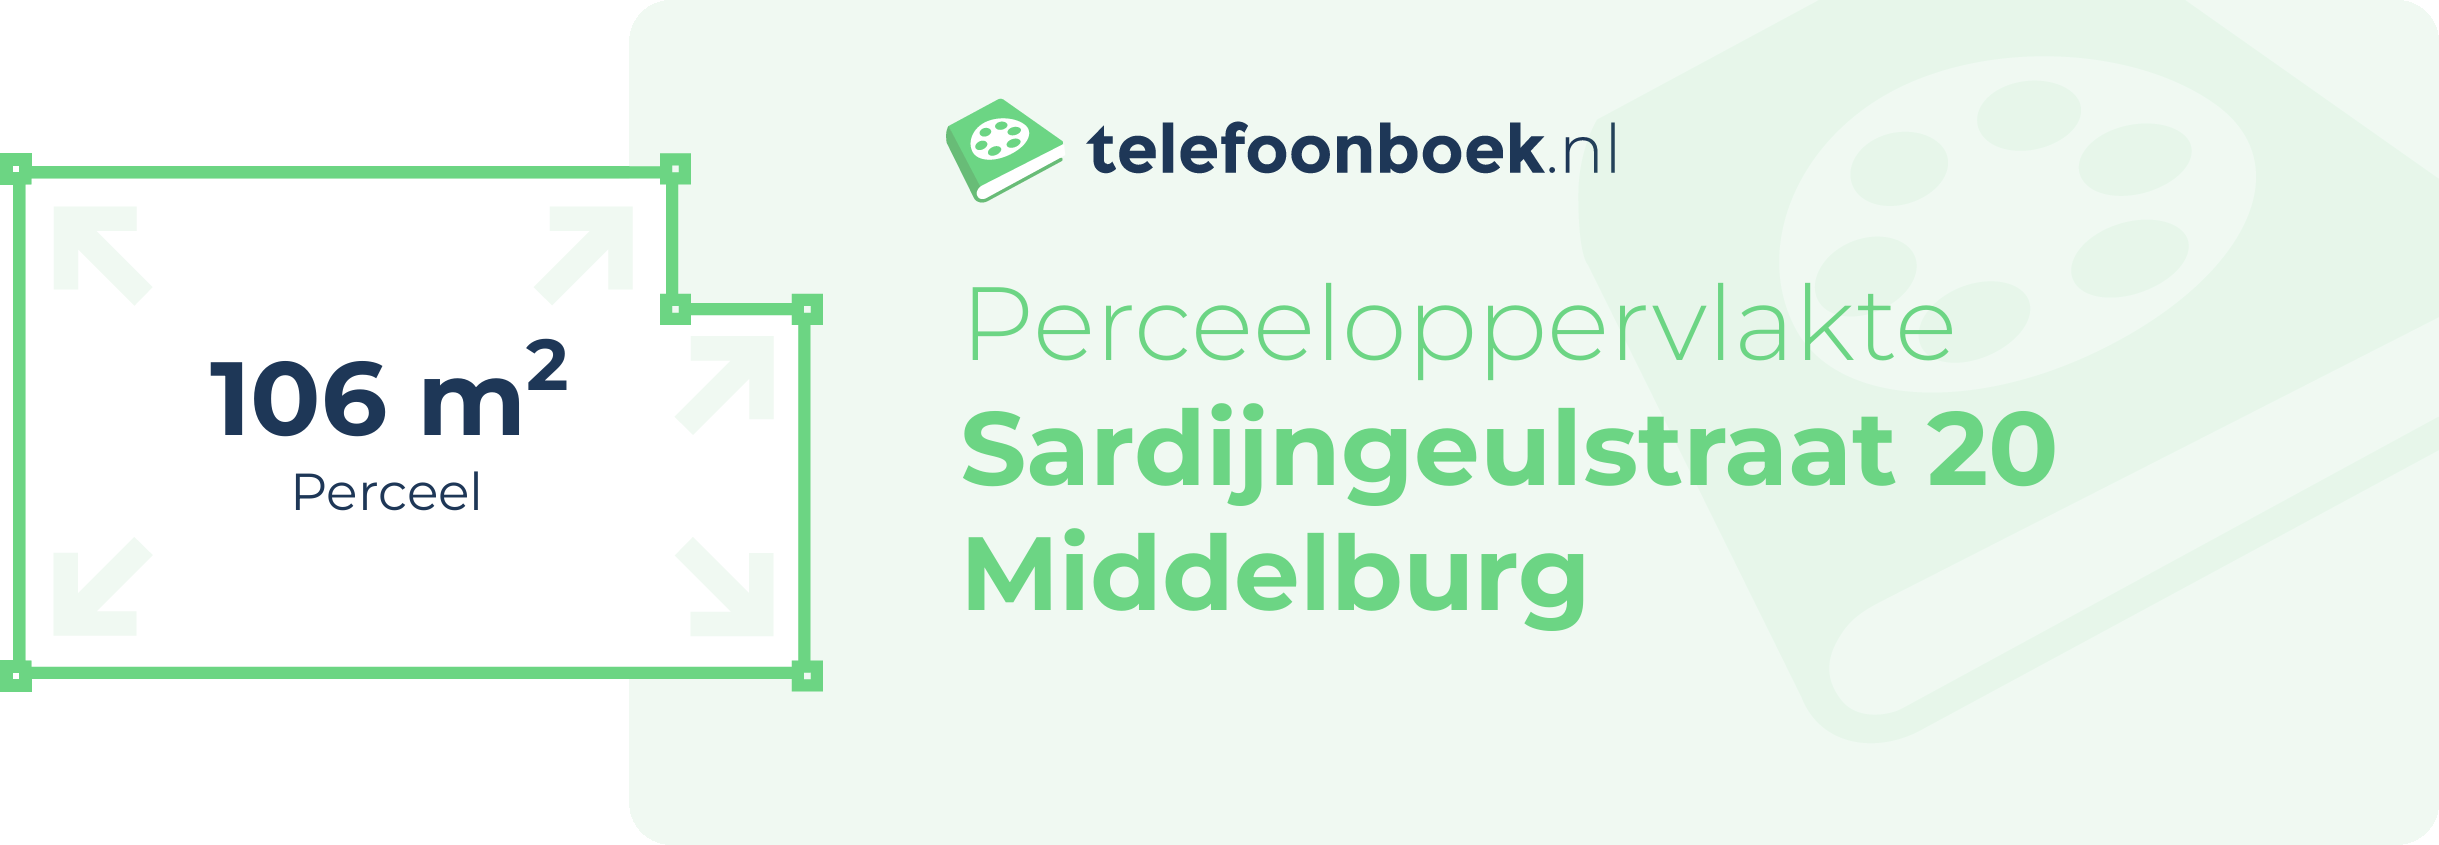 Perceeloppervlakte Sardijngeulstraat 20 Middelburg